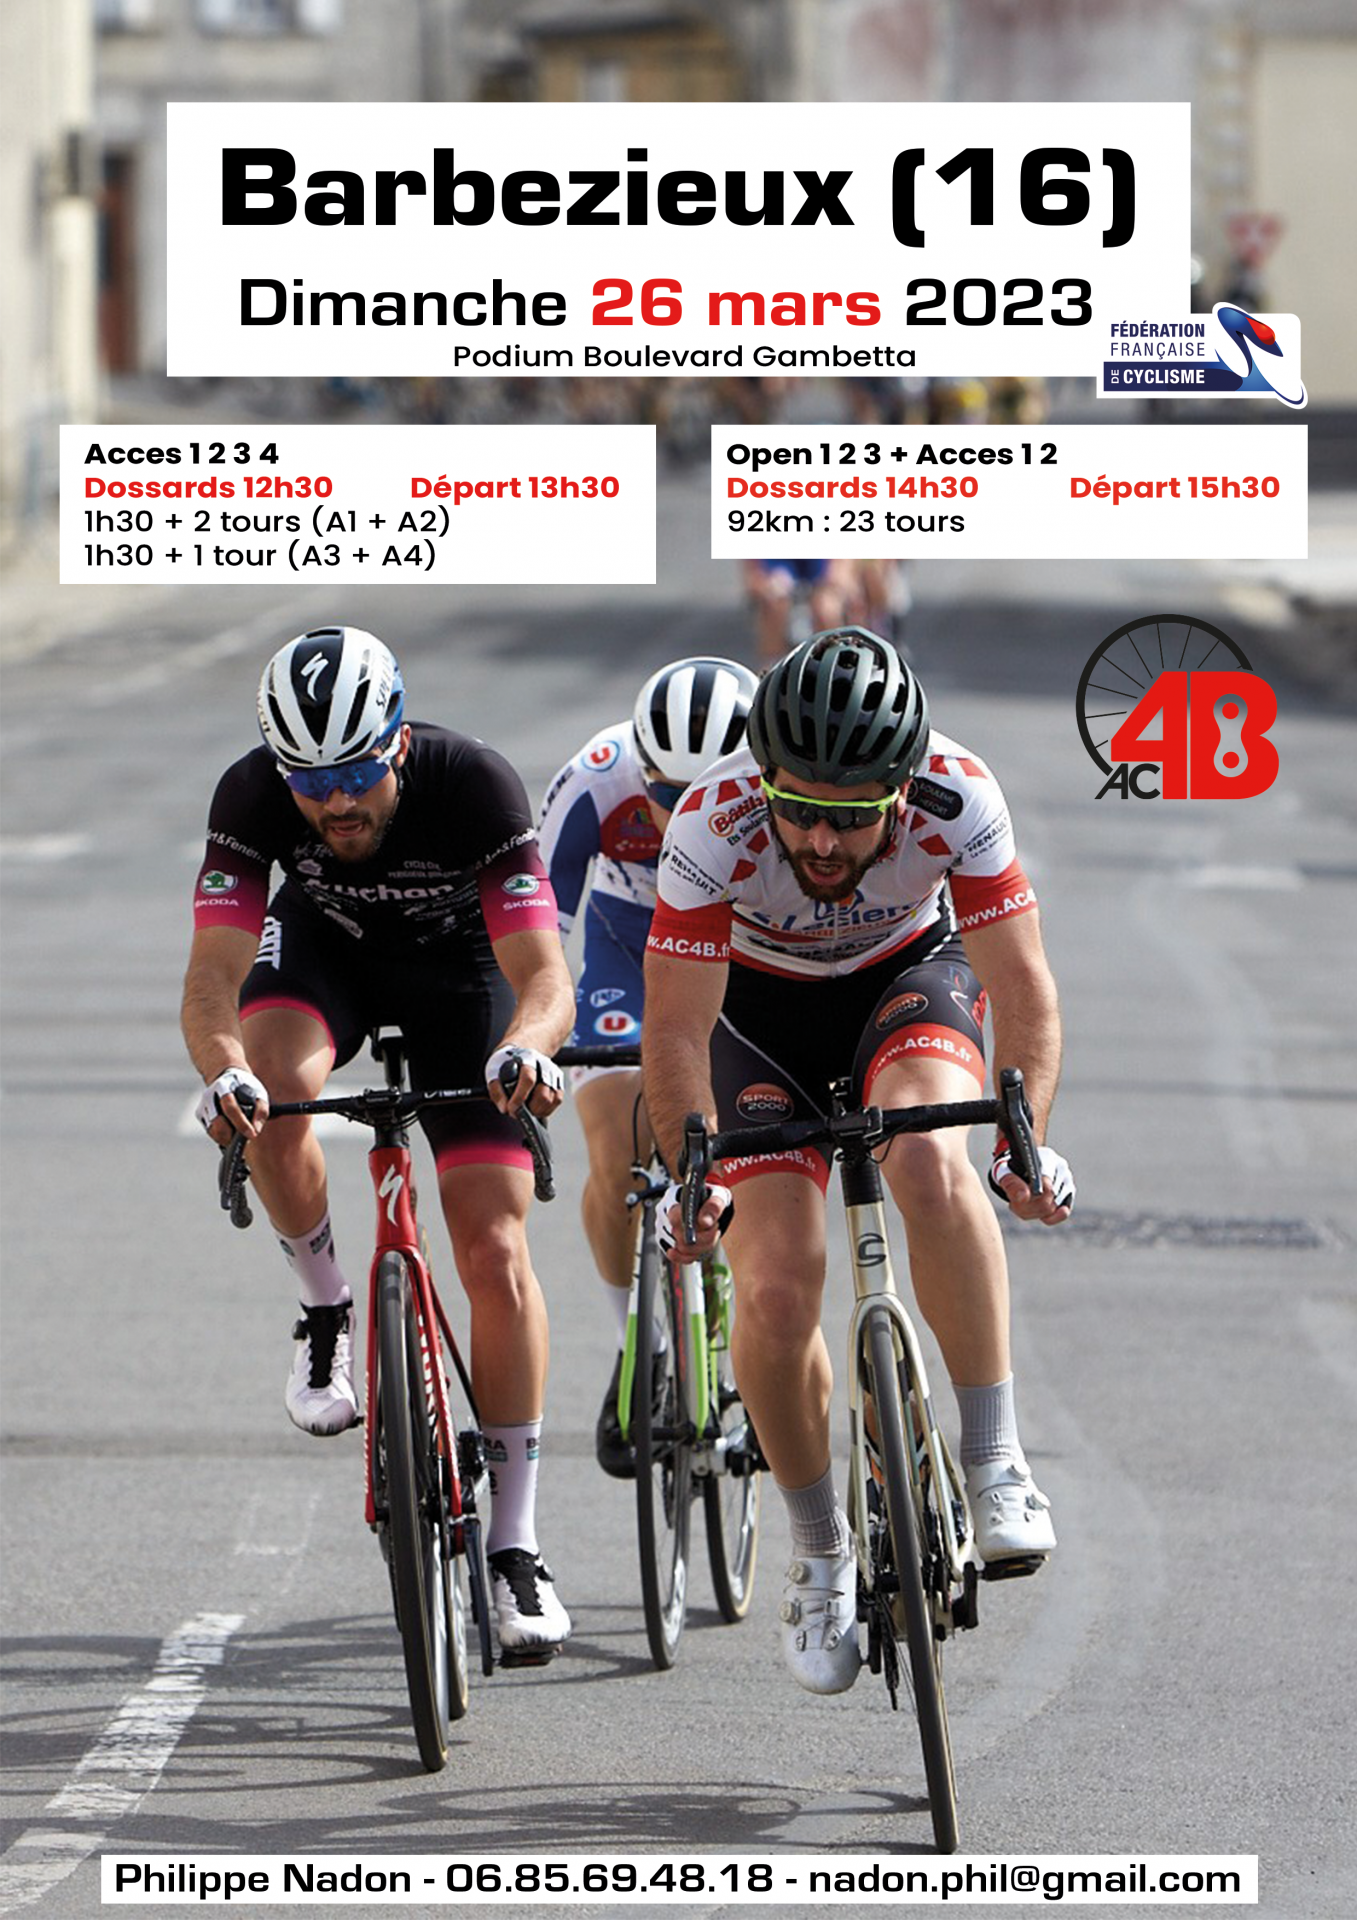 L’AC4B Organise deux courses cyclistes à Barbezieux le 26/03/2023.